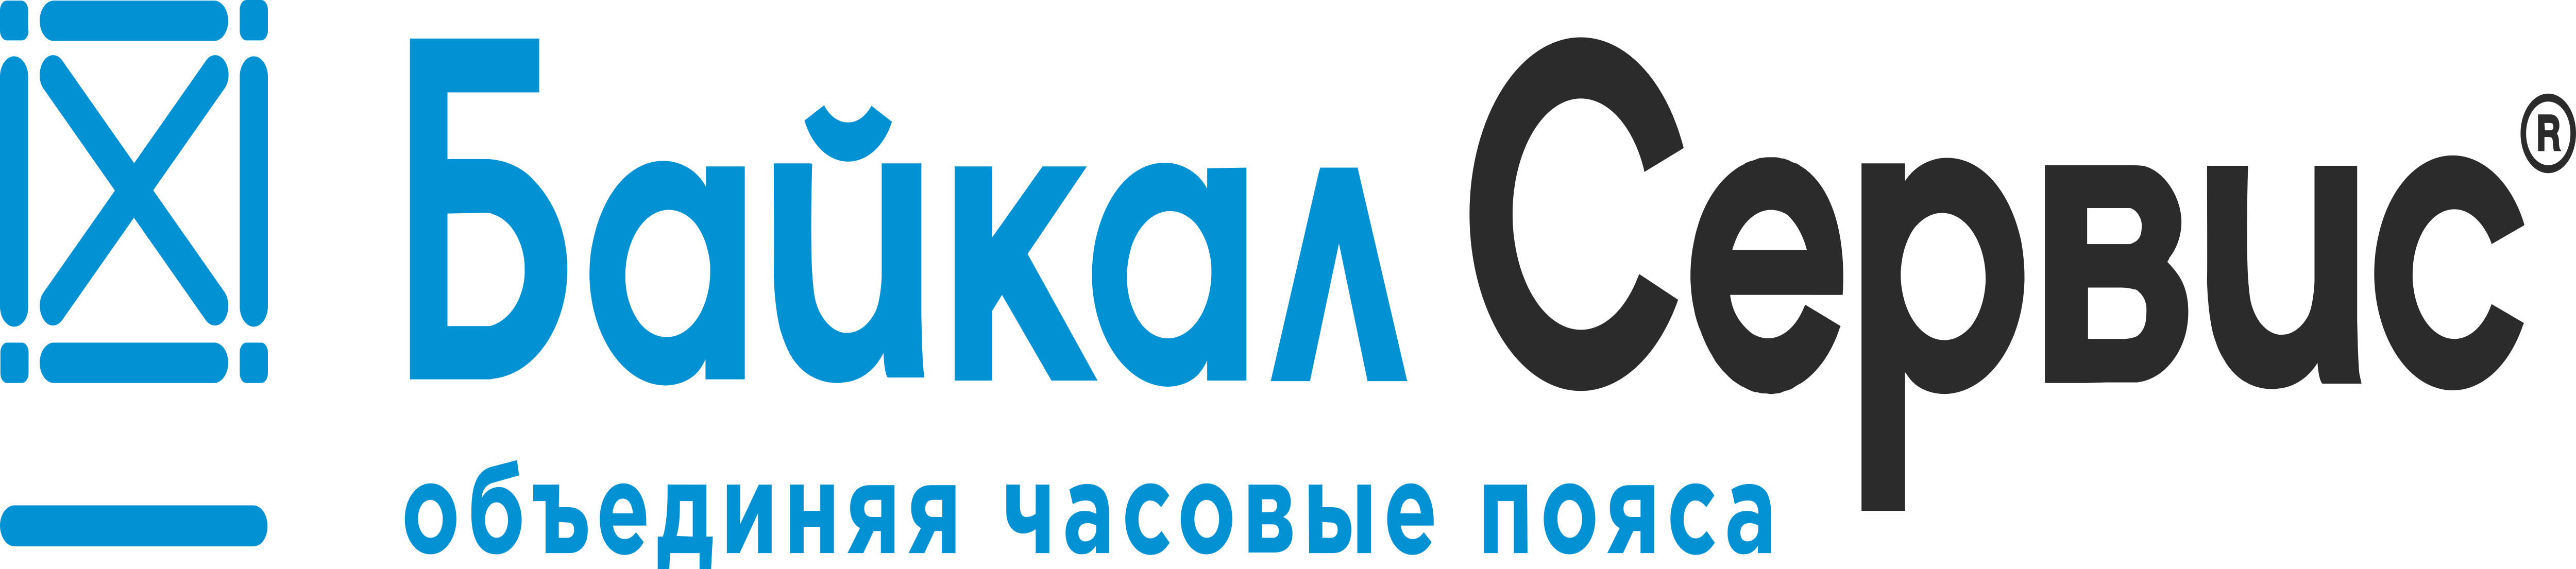 Байкал сервис. ТК Байкал сервис. Байкал сервис лого. Логотип компании Байкал сервис. Байкал посылок сервис